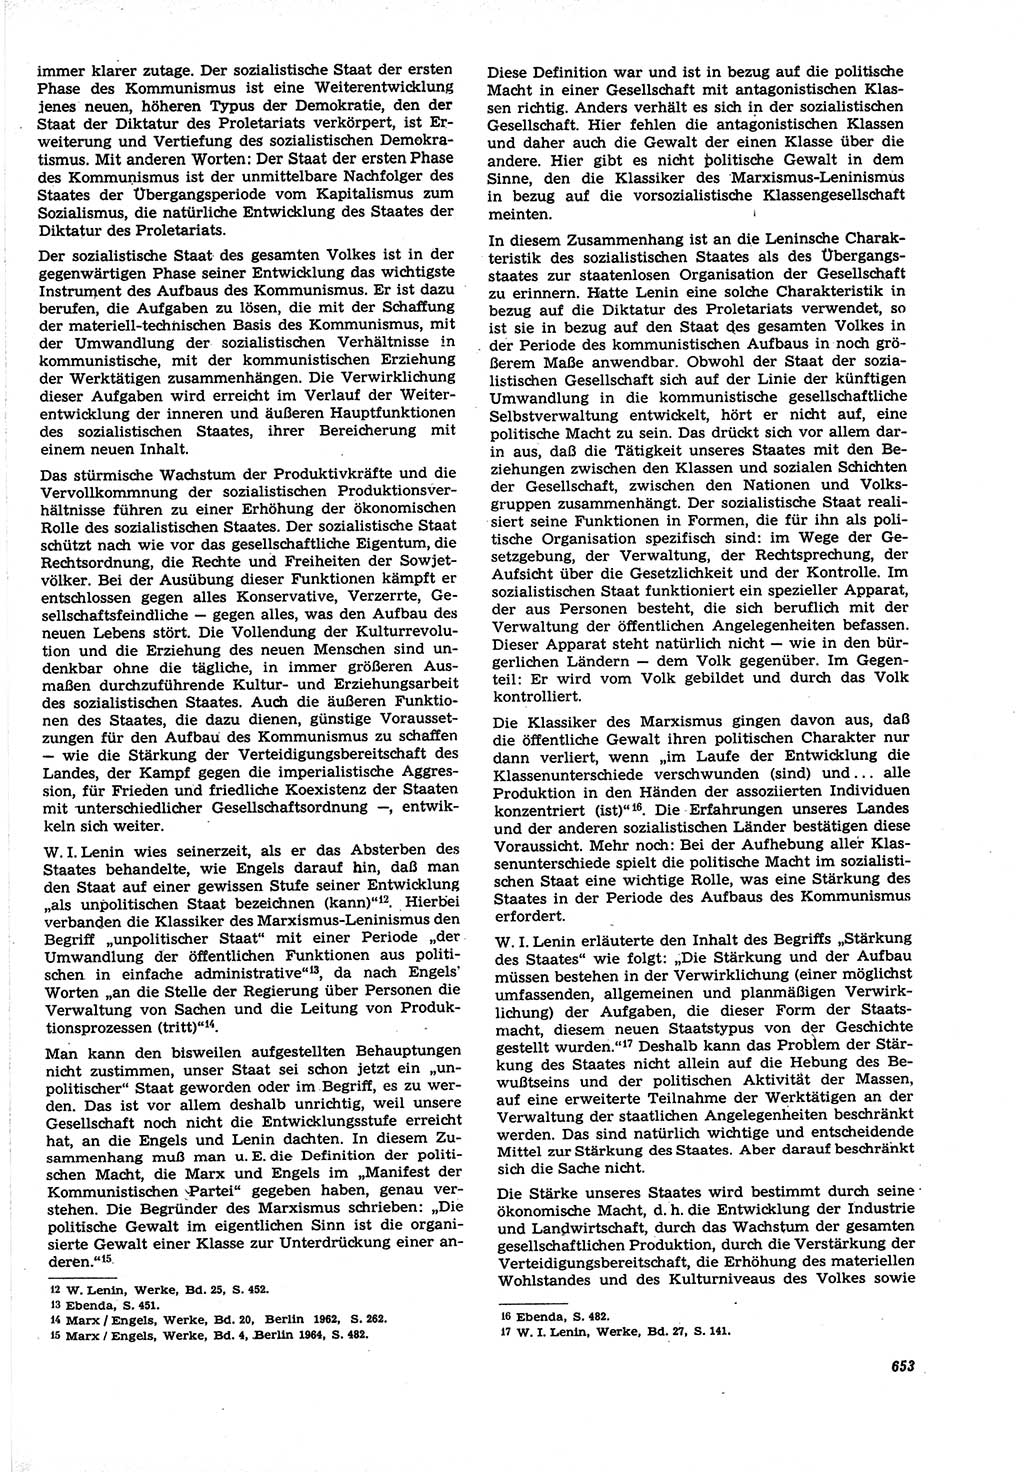 Neue Justiz (NJ), Zeitschrift für Recht und Rechtswissenschaft [Deutsche Demokratische Republik (DDR)], 21. Jahrgang 1967, Seite 653 (NJ DDR 1967, S. 653)